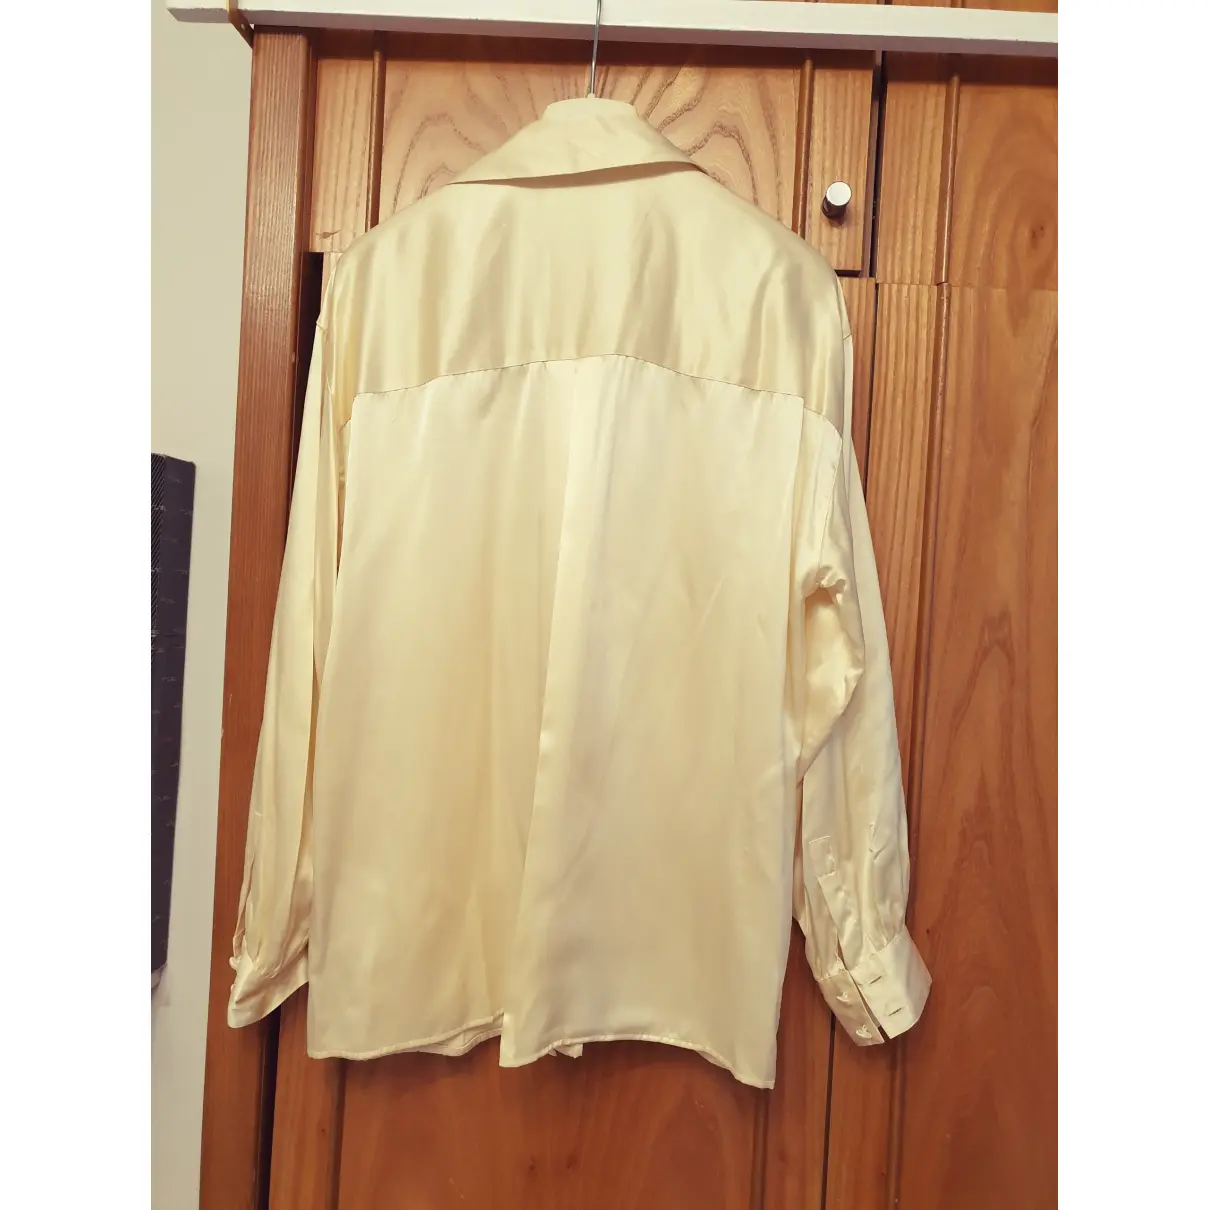 Buy Loewe Silk blouse online - Vintage